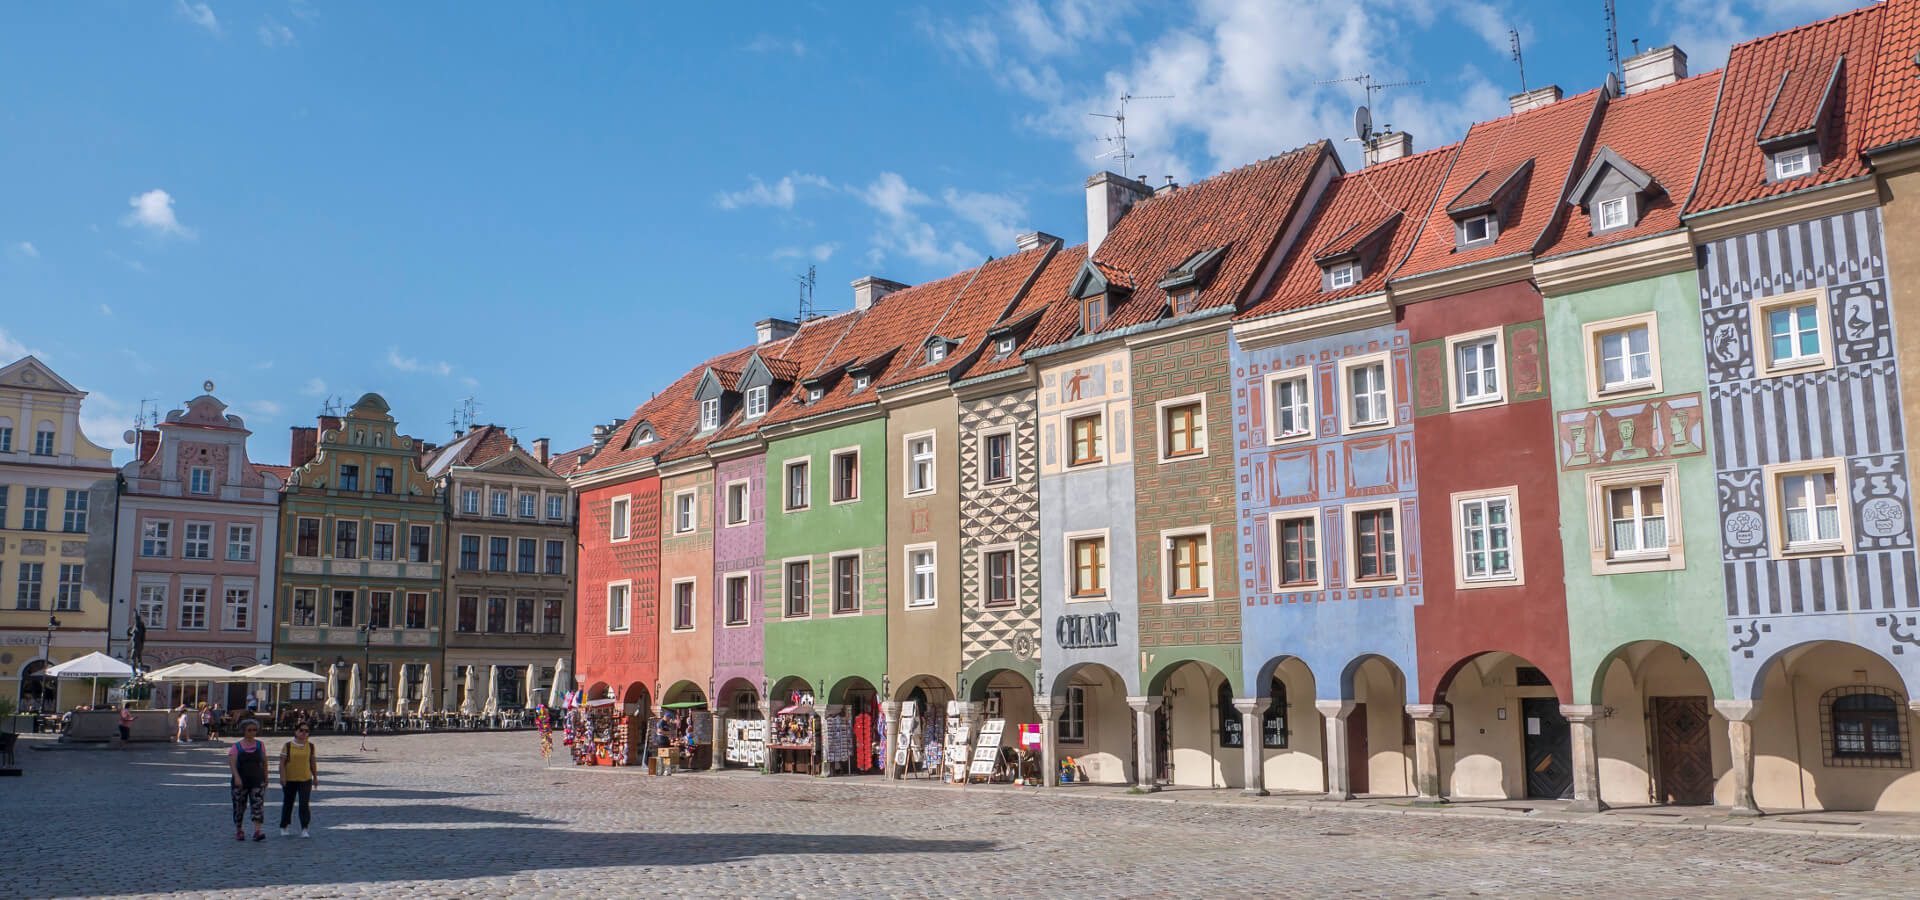 Co WARTO zobaczyć w Poznaniu? 8 najciekawszych ATRAKCJI i miejsc, które warto zwiedzić w Poznaniu (w jeden dzień i weekend)